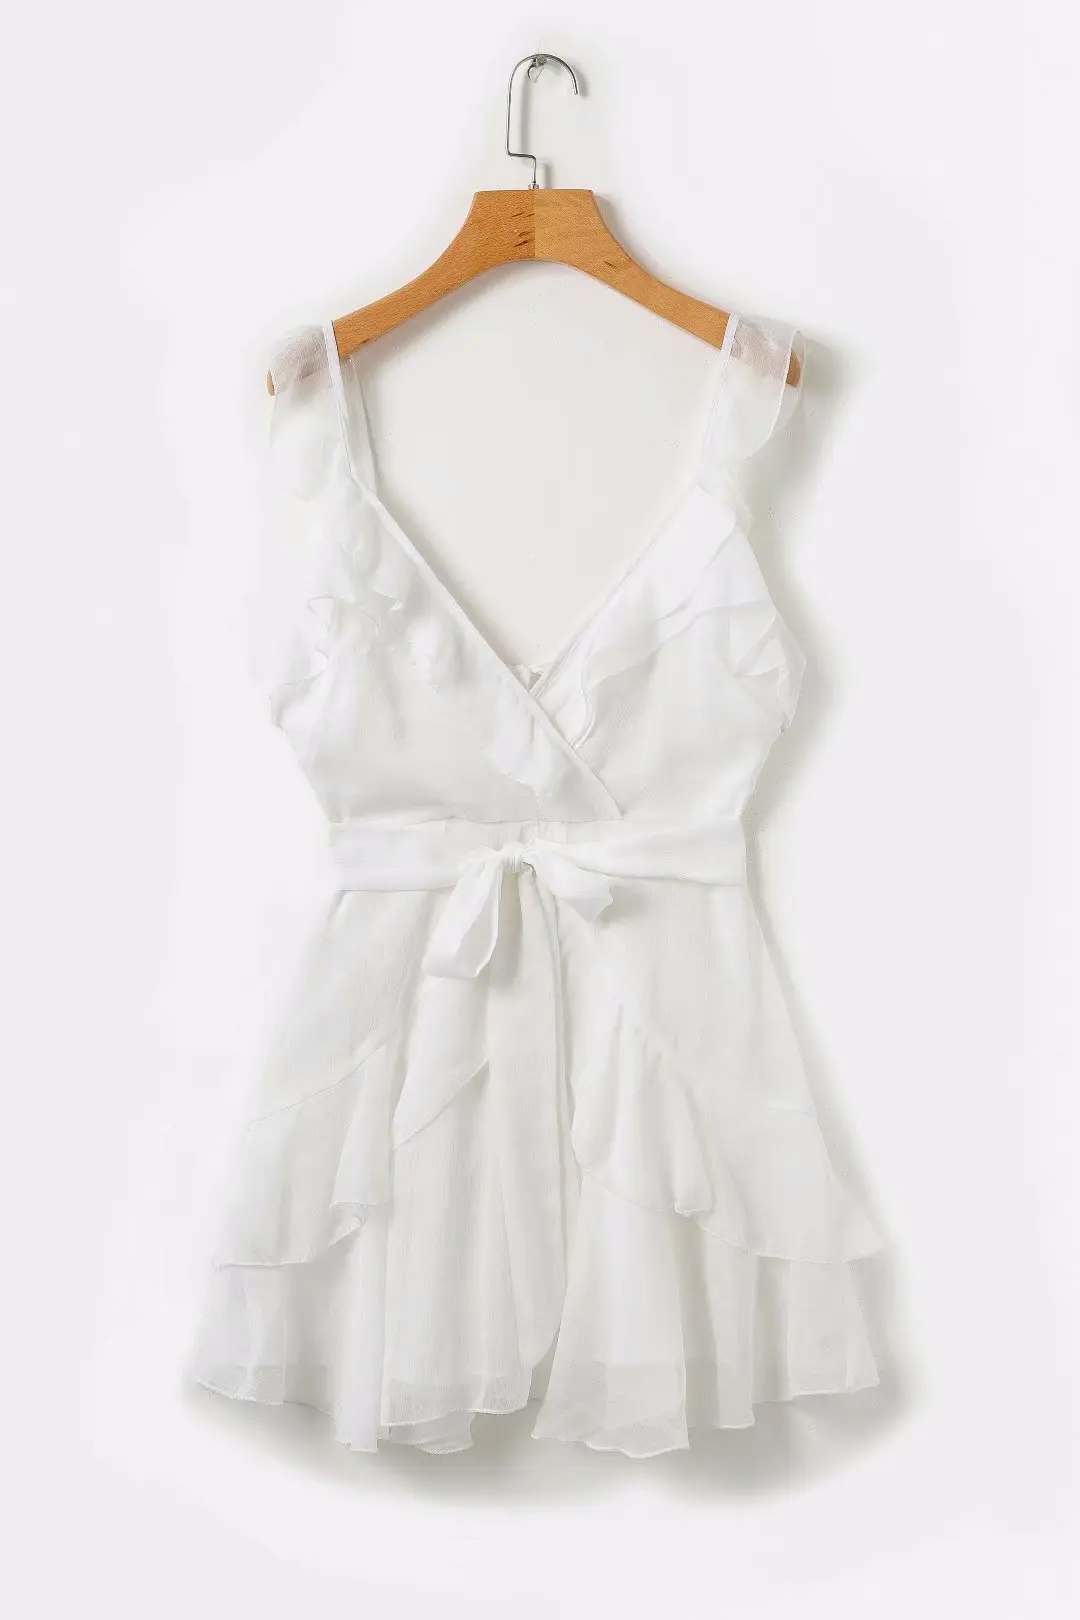 Сексуальное желтое белое шифоновое платье с открытой спиной женское летнее платье богемные пляжные вечерние платья Элегантные корейские мини платья - Цвет: Белый